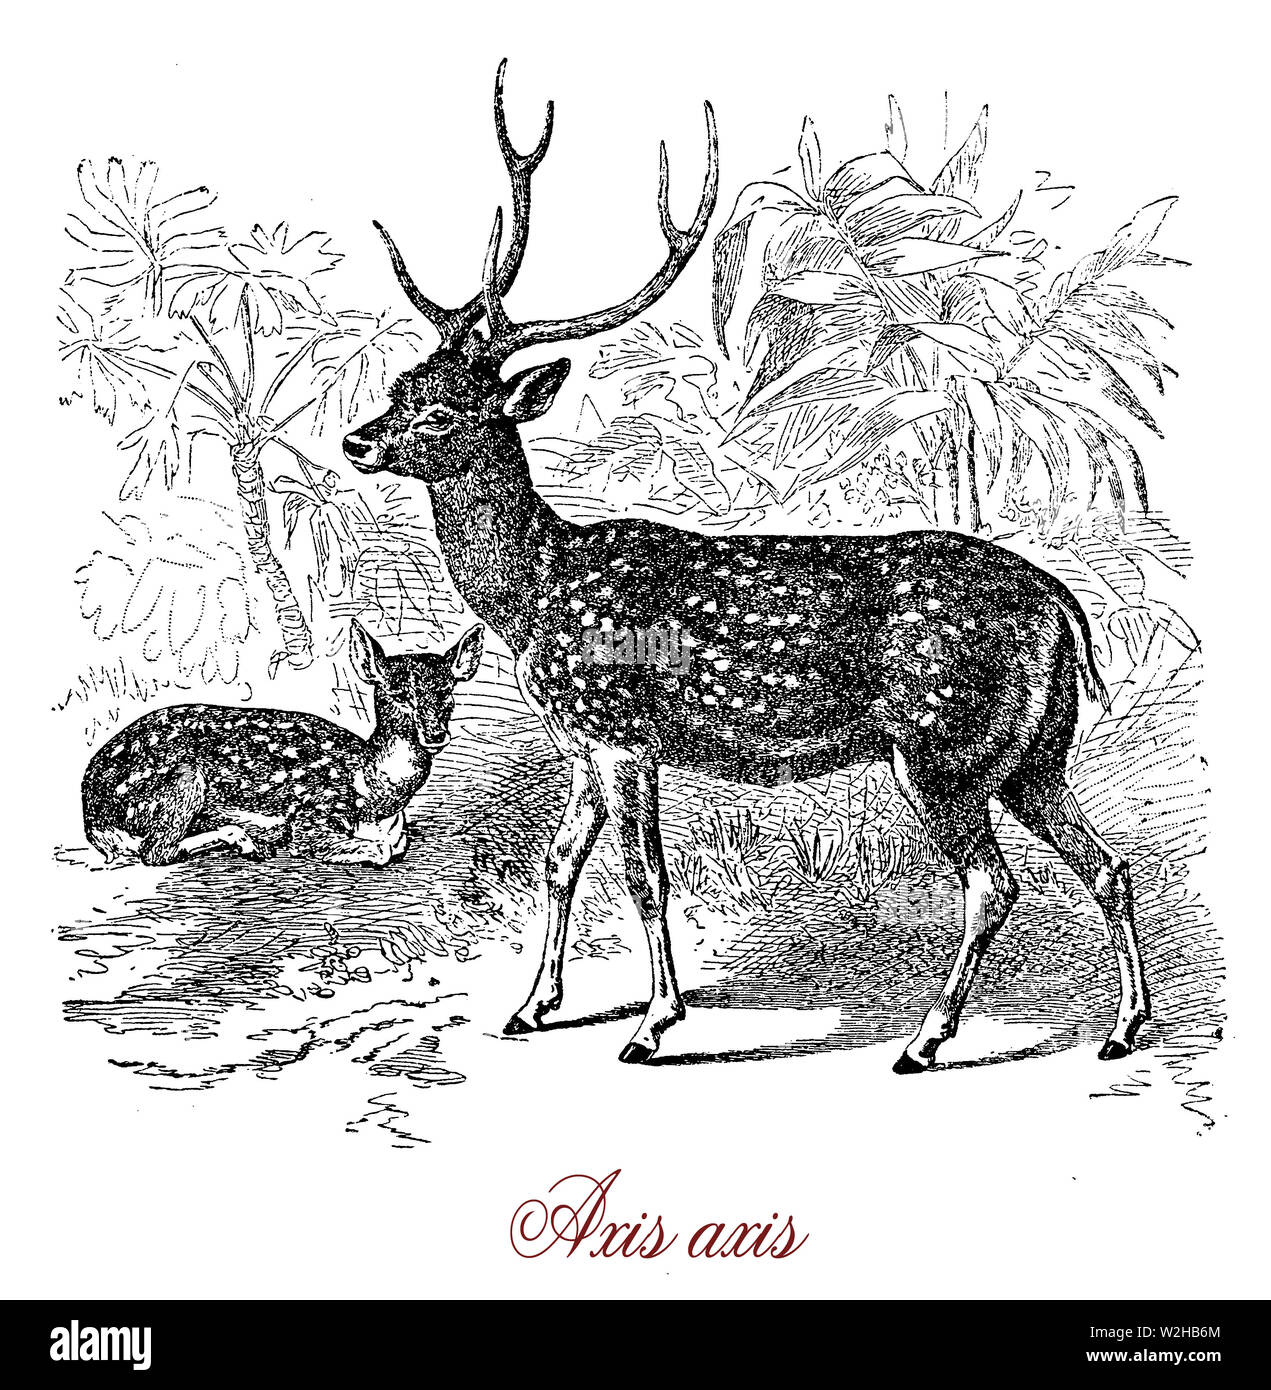 Ciervo Axis o Chital es con cuernos de ciervo y la parte dorsal cubierto por manchas blancas nativas de la India.es un animal gregario y forma manadas matriarcales forrajeando en las praderas Foto de stock